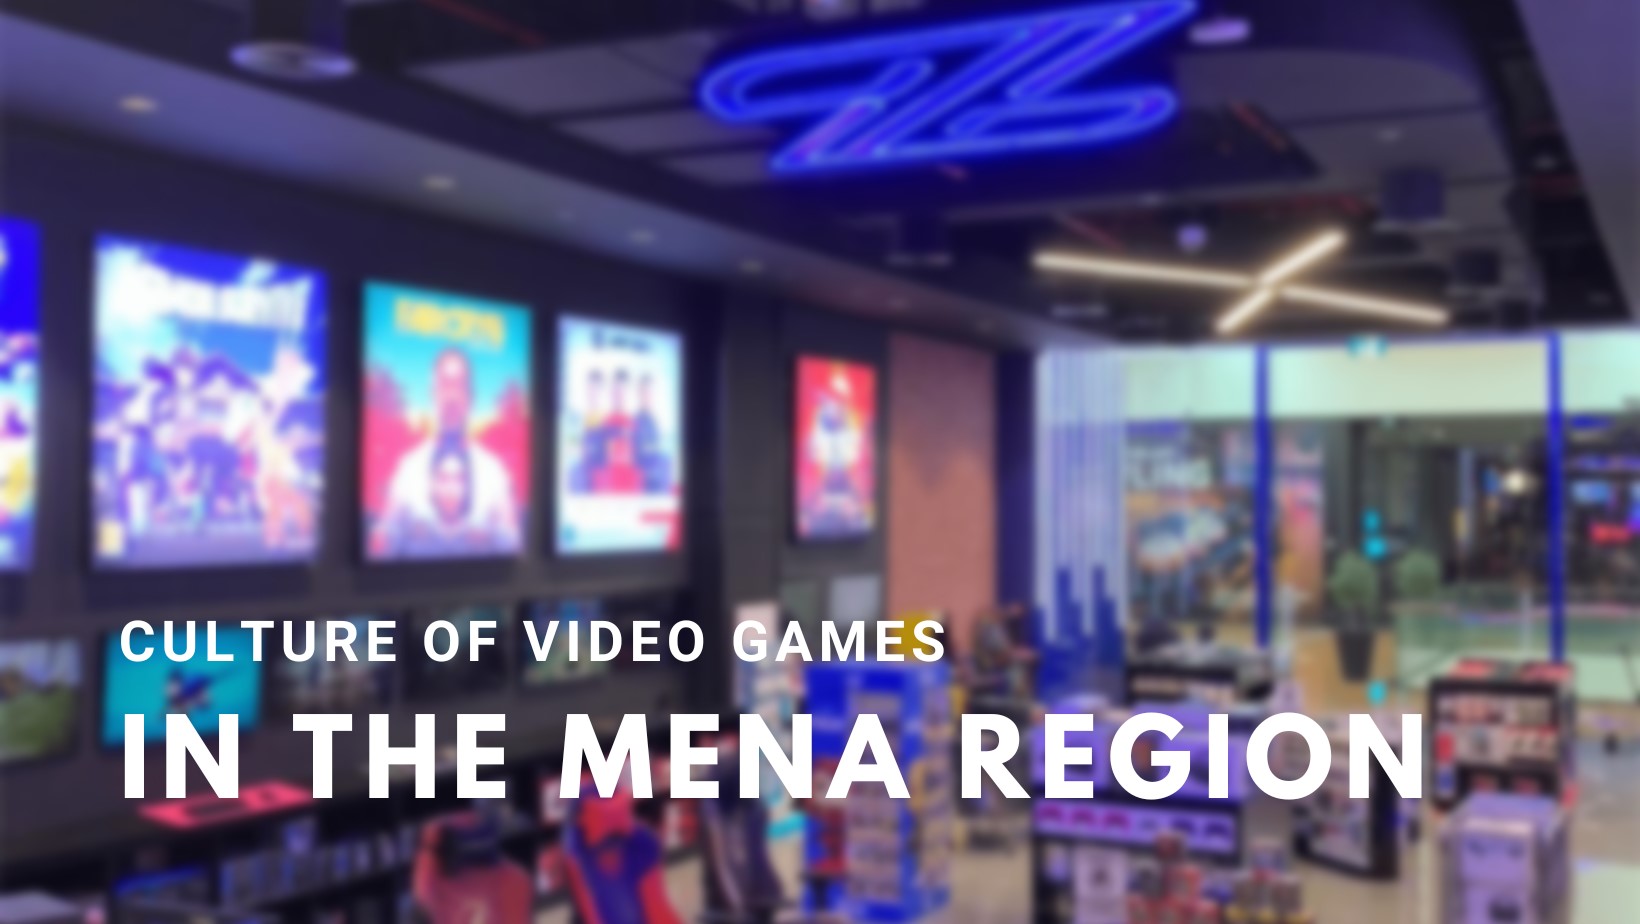 Culture of Video Games in the MENA Region